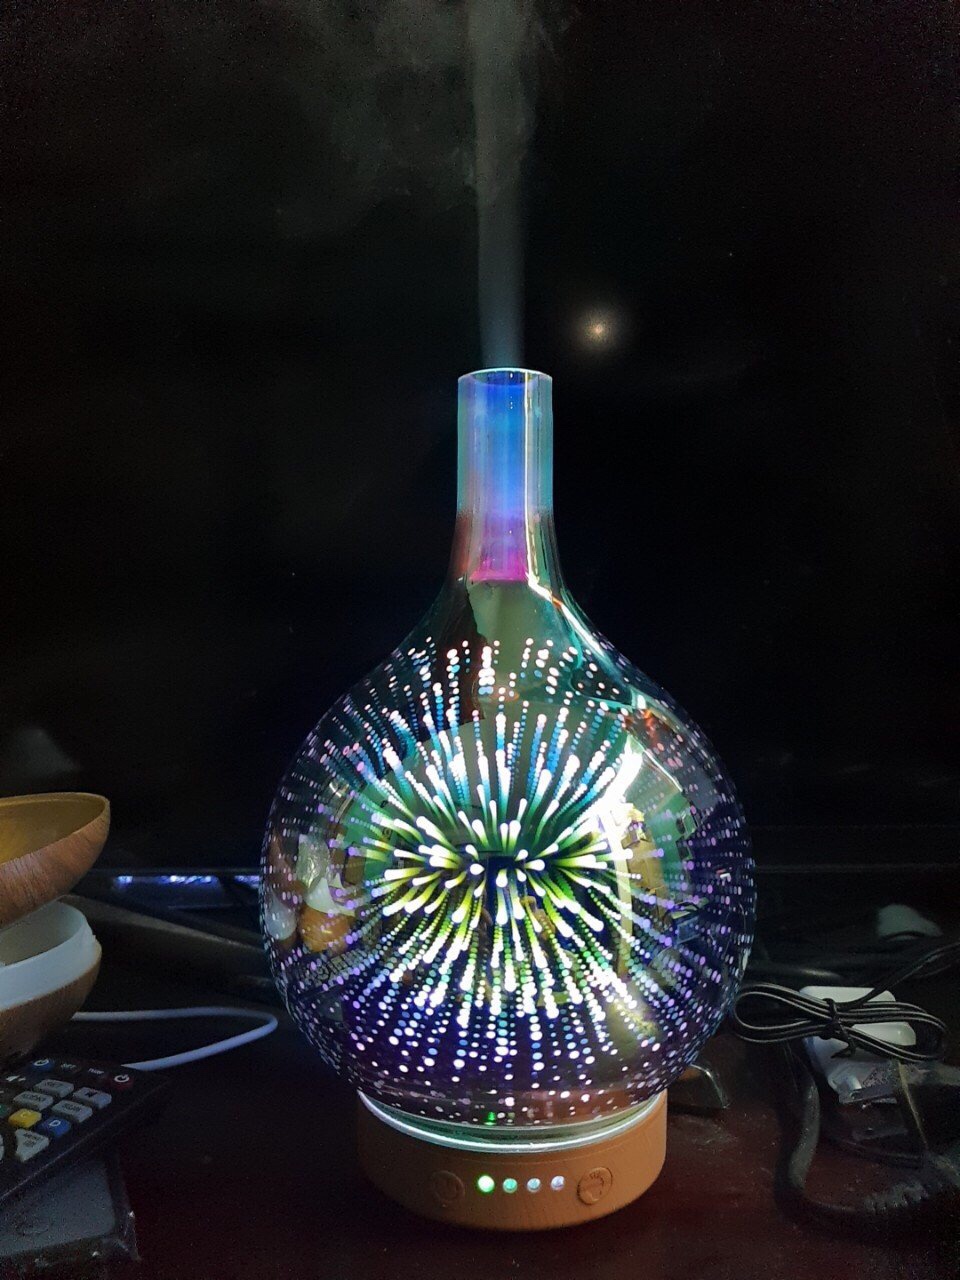 Đèn xông, Phun sương, Khuếch Tán tinh dầu hình lọ hoa 3D đẹp 150ml